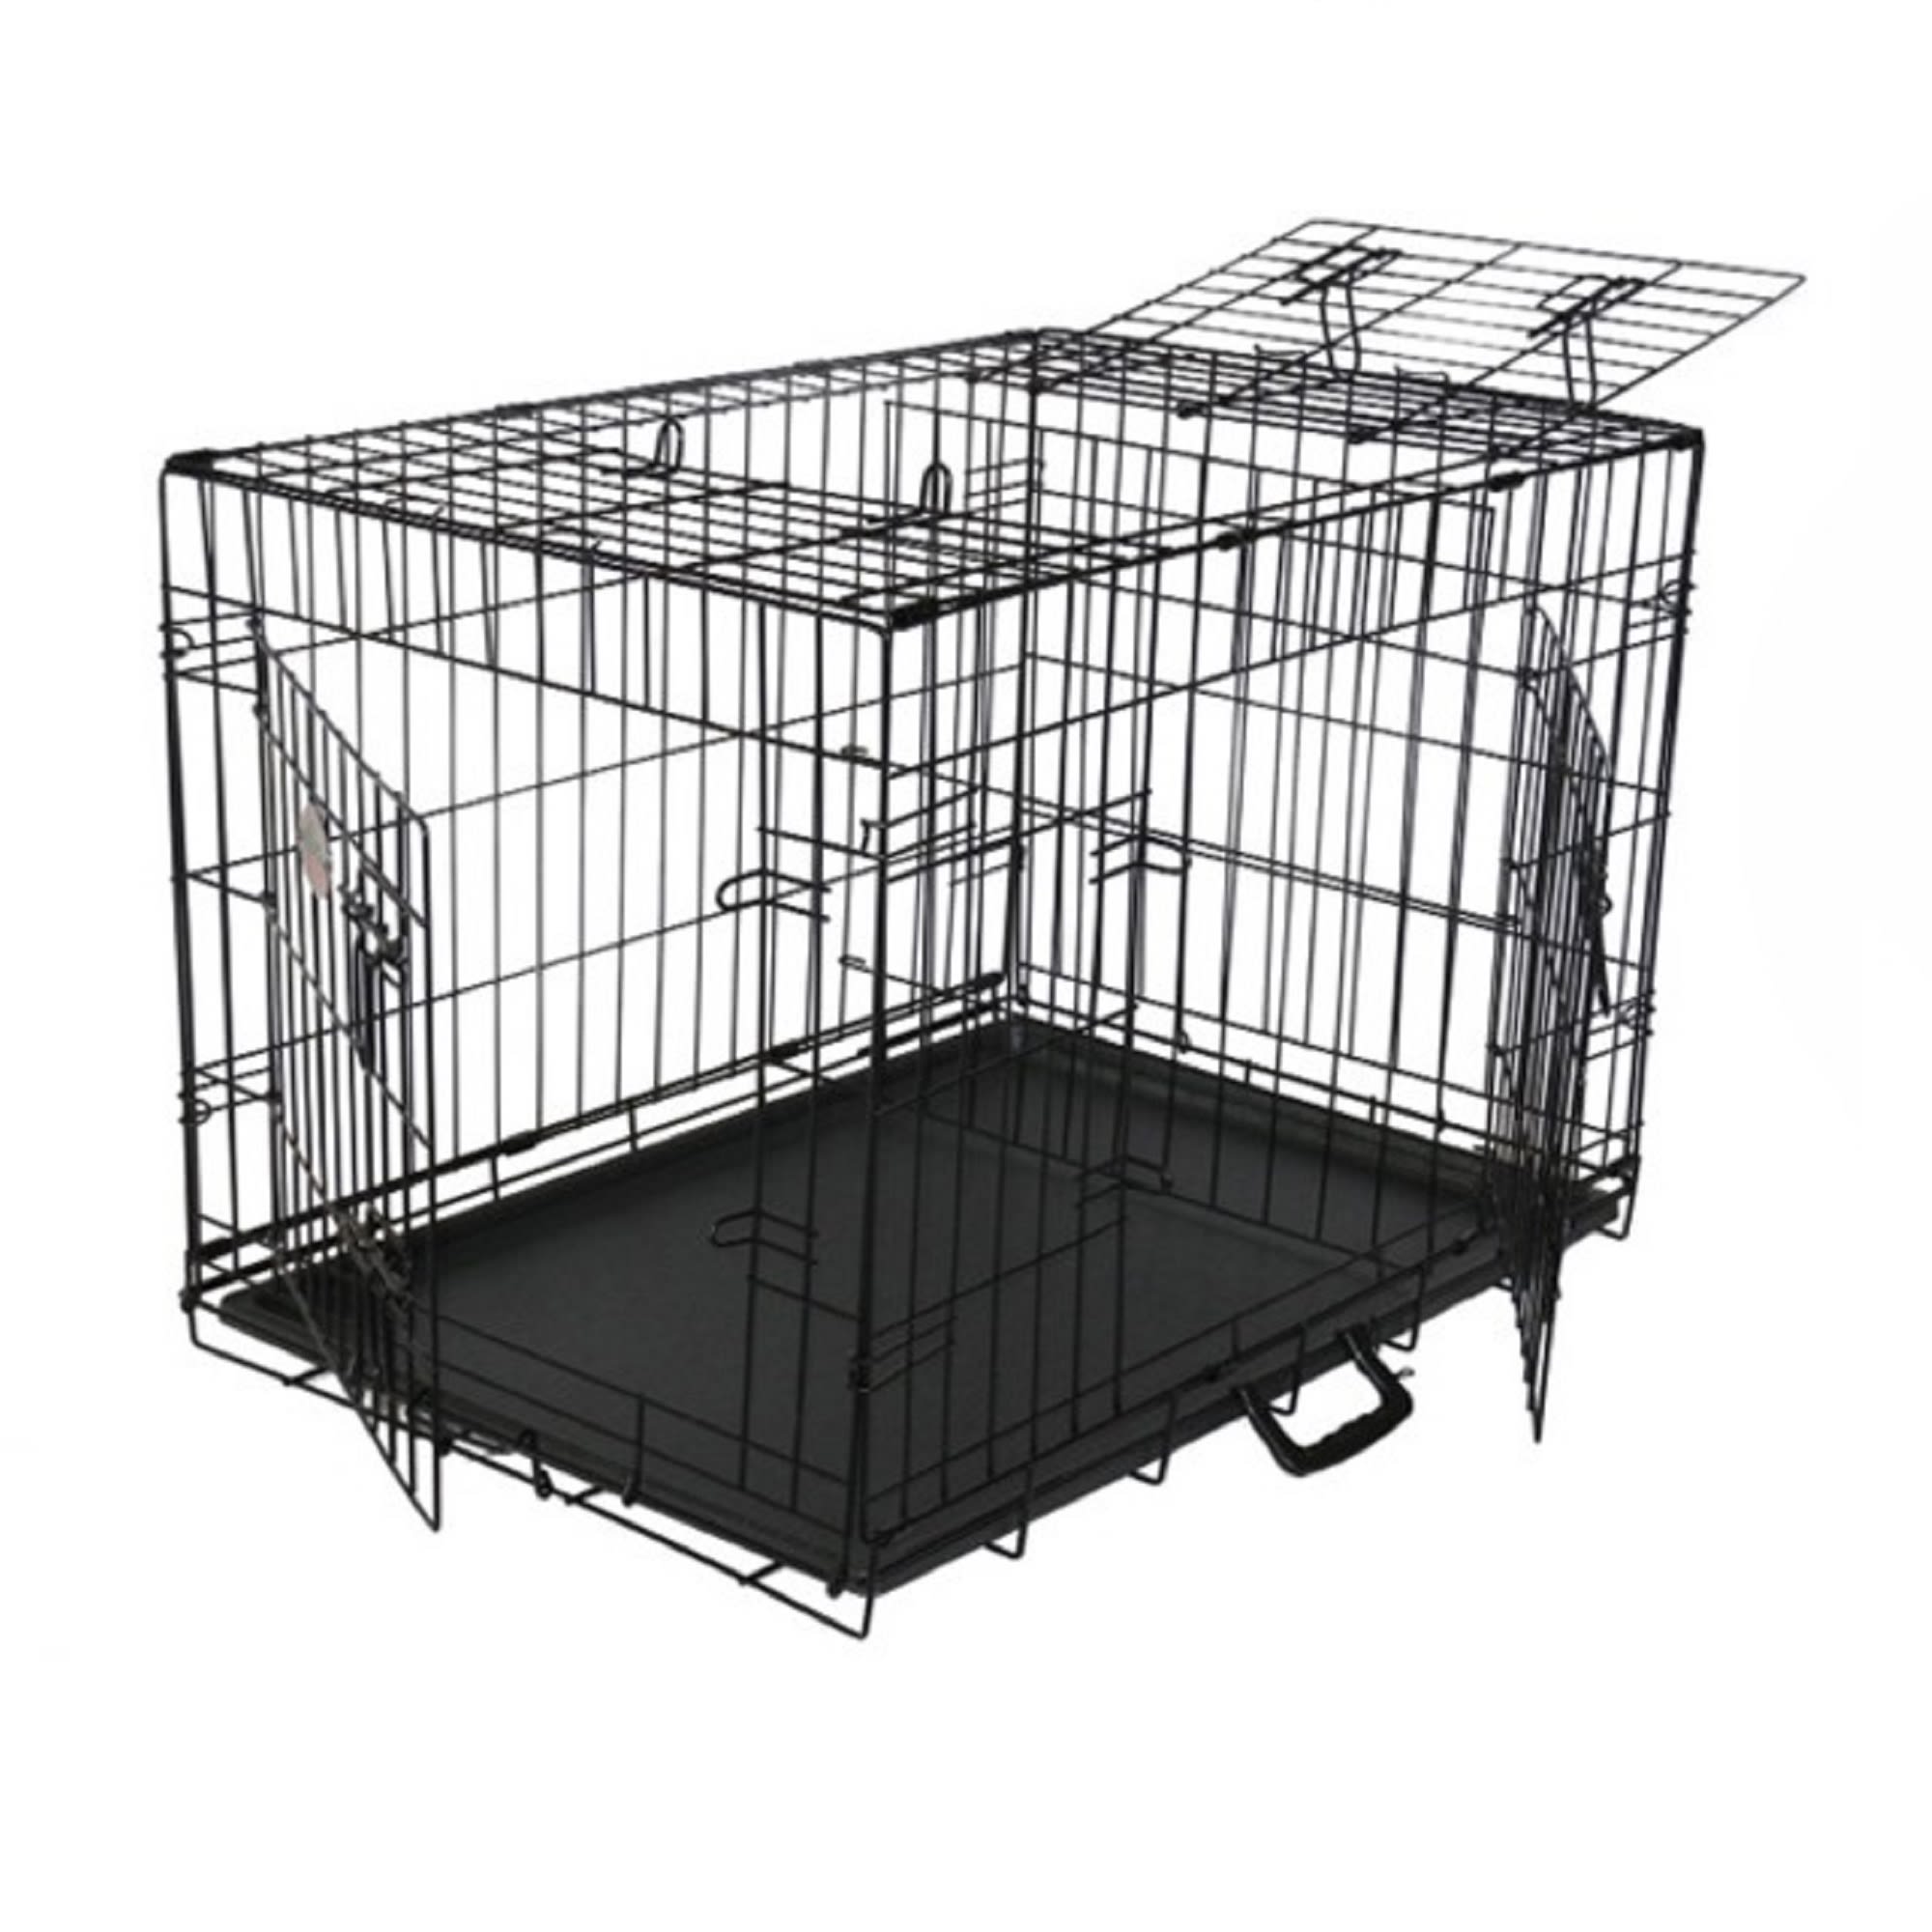 Go Pet Club 3 Door Foldable Metal Dog Crate, 36" L X 24" W X 26" H Petco